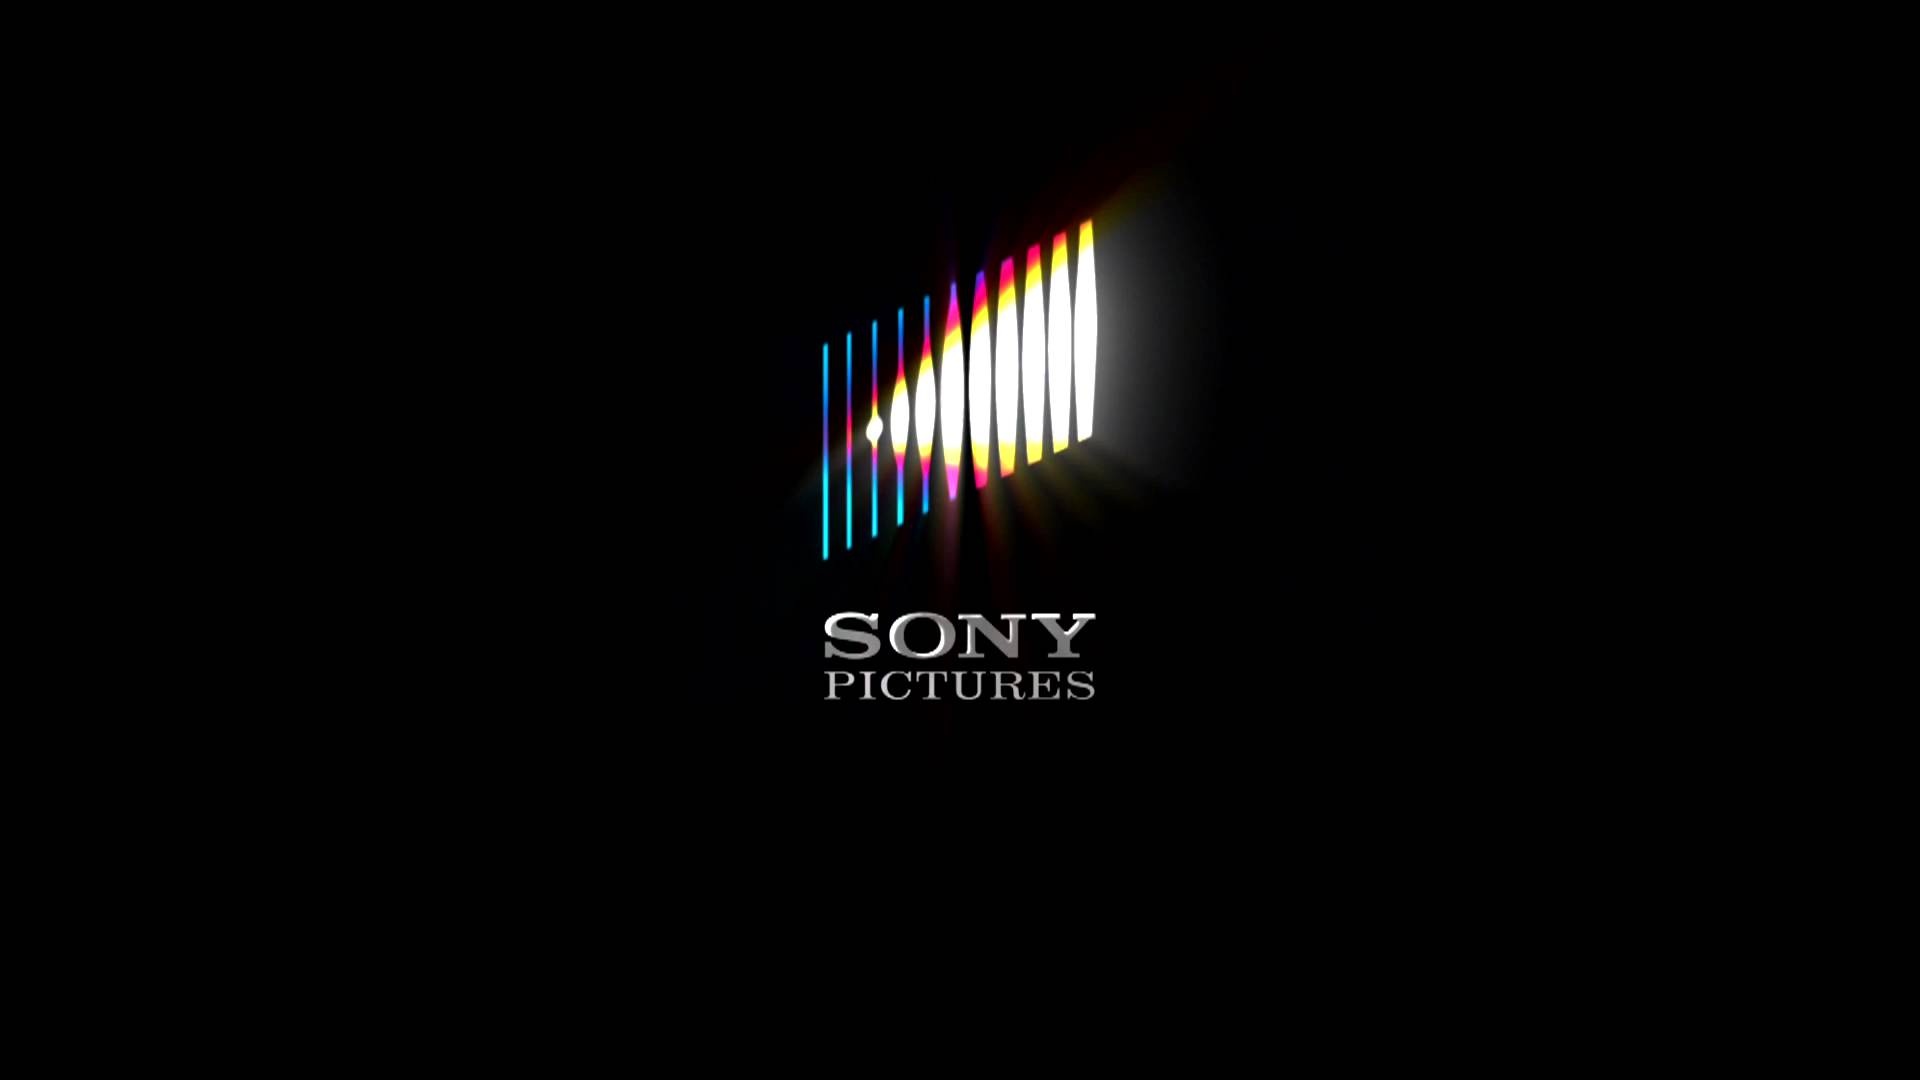 Сони пикчерс. Sony pictures. Sony Кинокомпания. Sony pictures логотип. Студия Sony pictures.